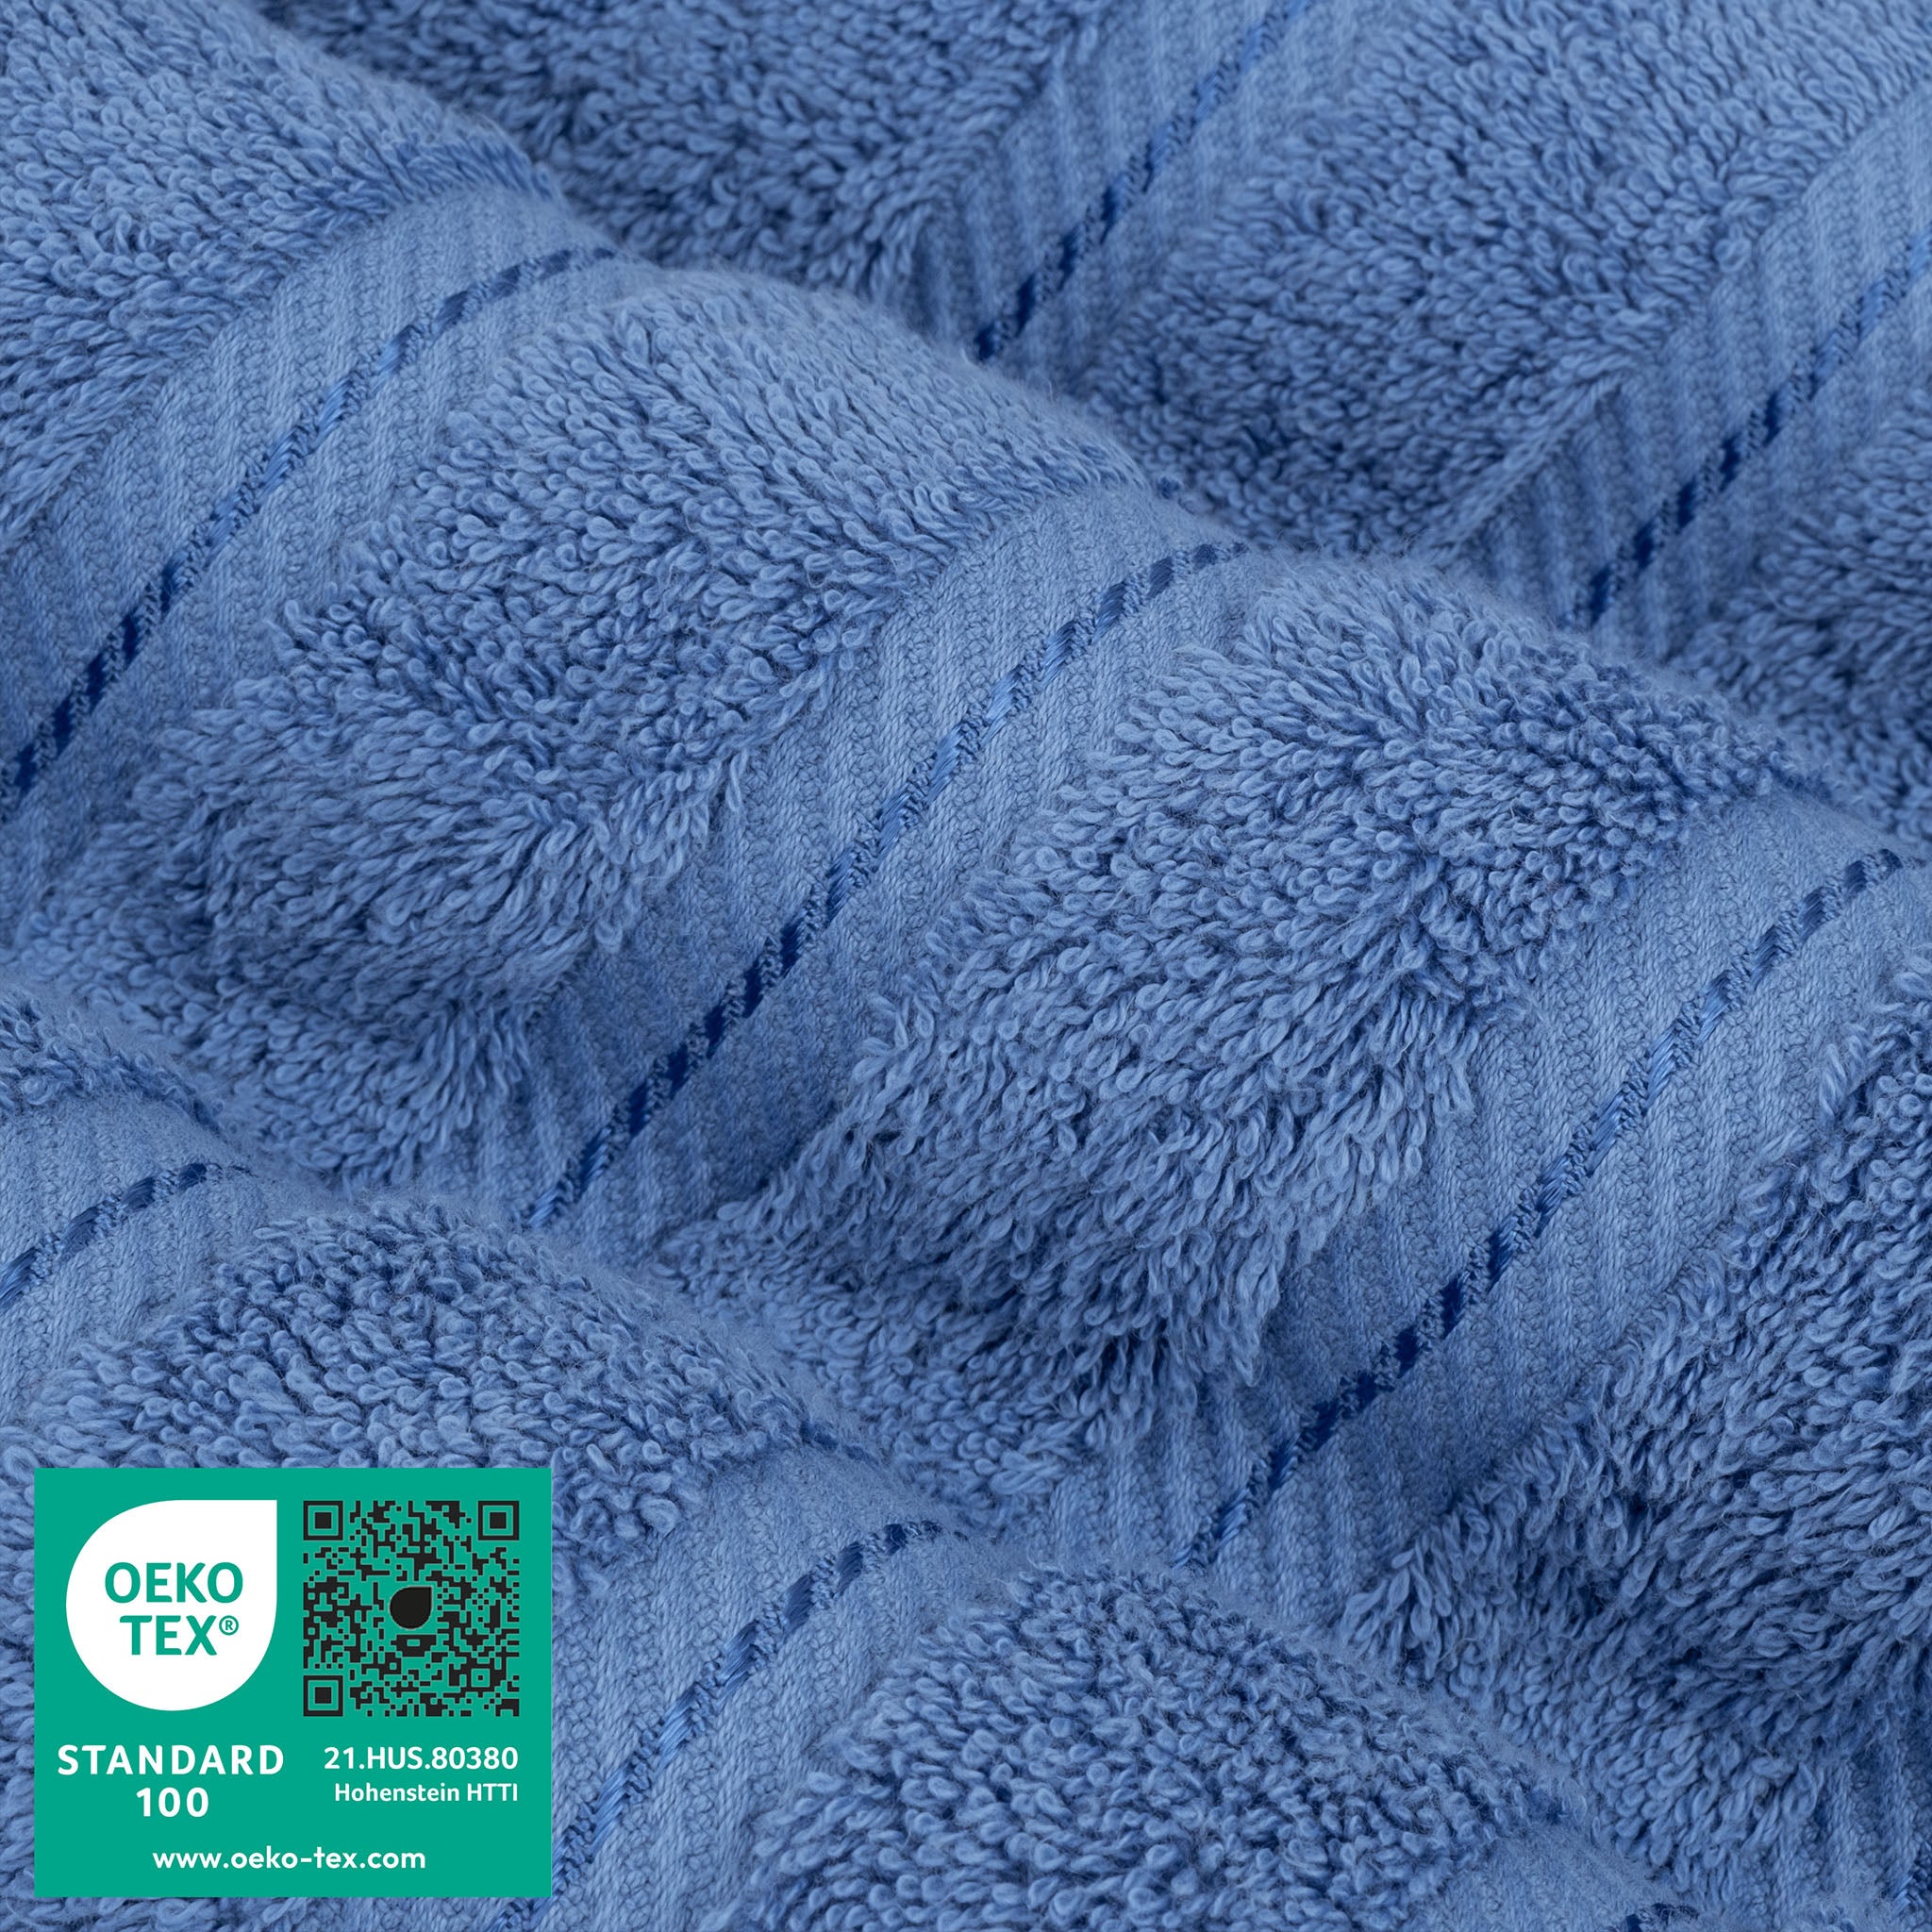 American Soft Linen 100% Turkish Cotton 6 Piece Towel Set Wholesale electric-blue-3